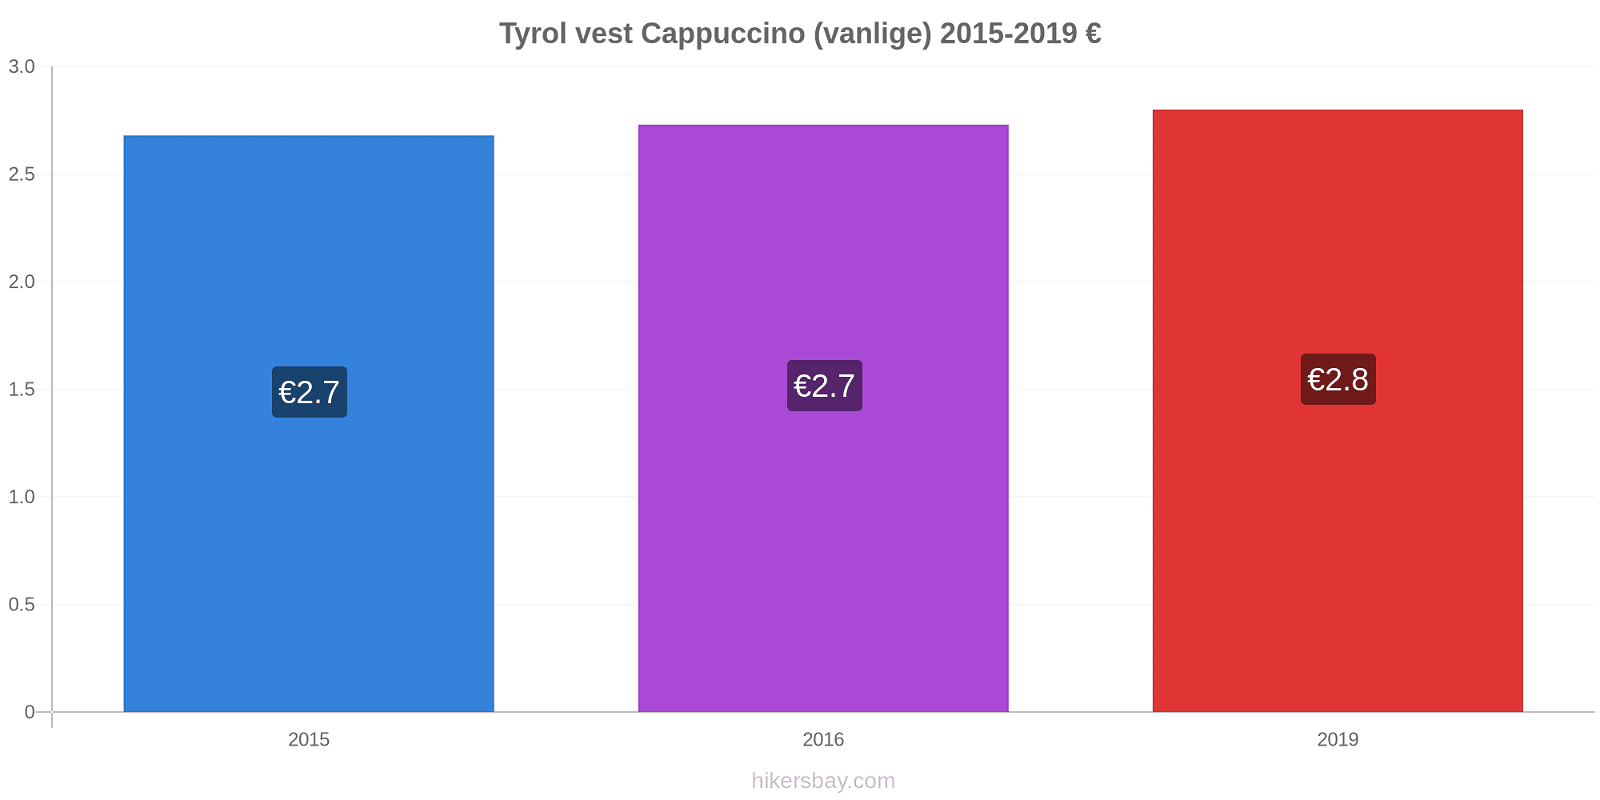 Tyrol vest prisendringer Cappuccino (vanlige) hikersbay.com